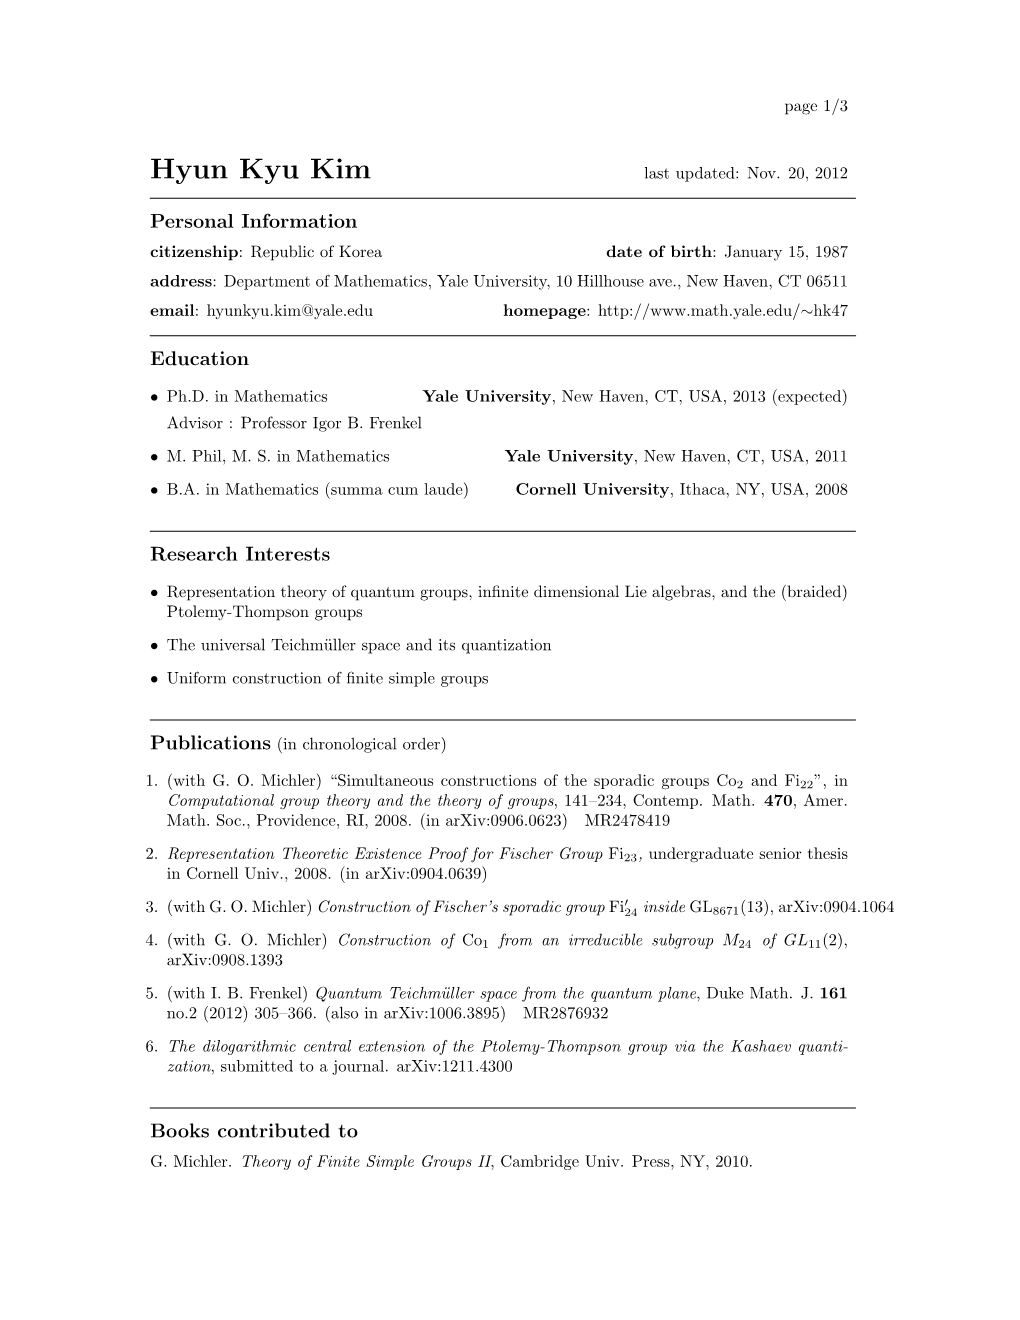 Hyun Kyu Kim Last Updated: Nov